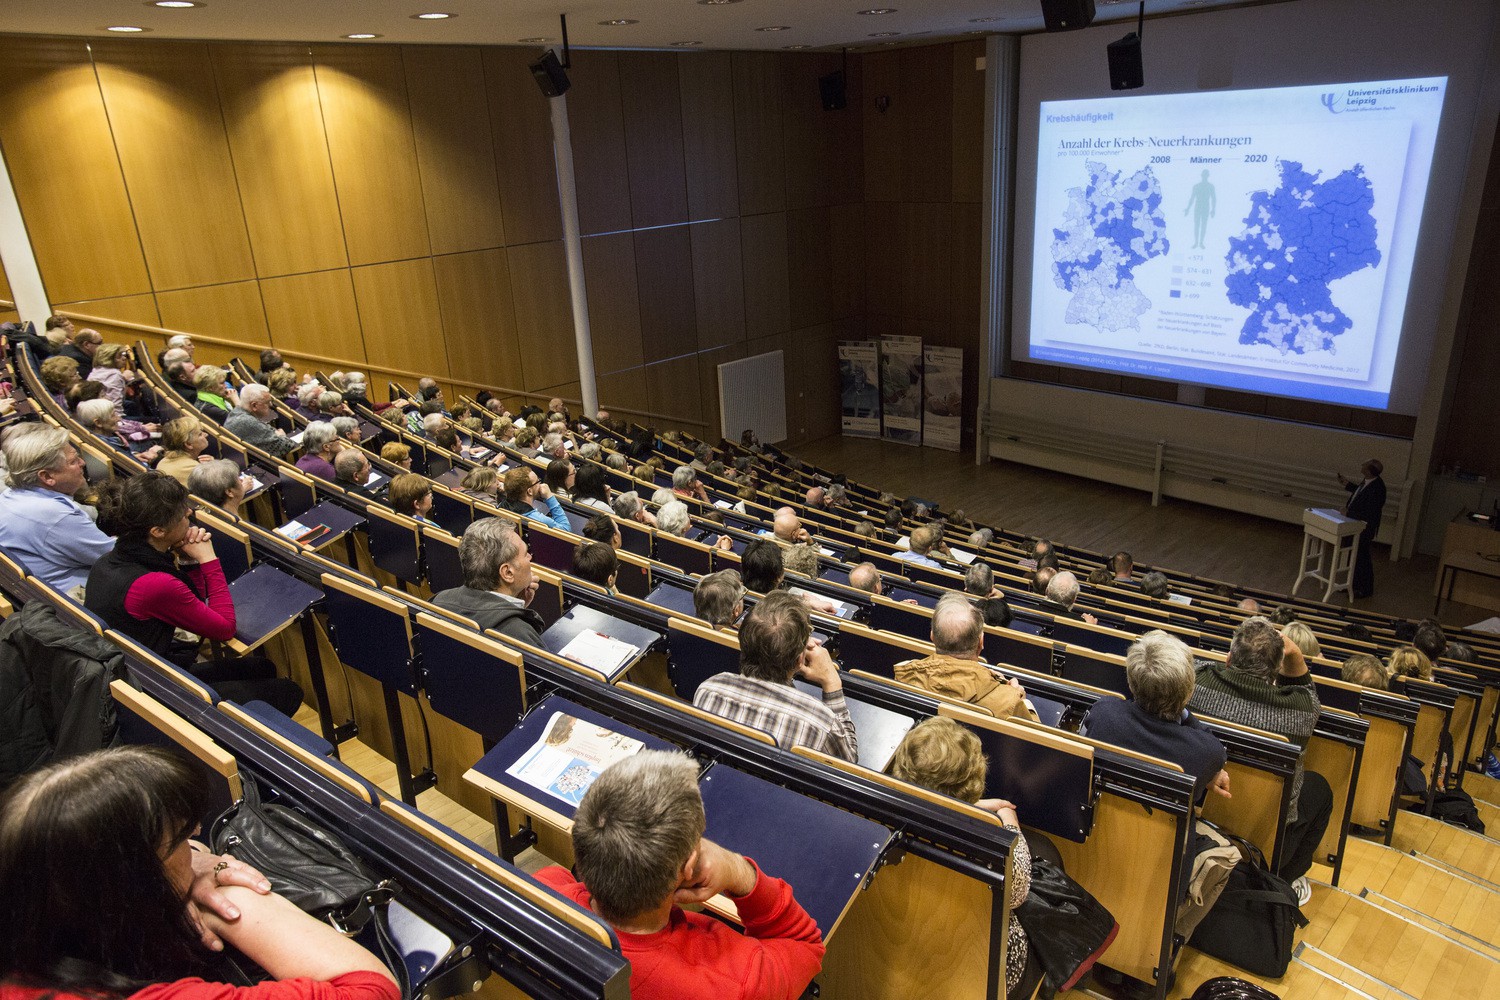 Am Mittwoch, 15. März, lädt das Universitätsklinikum Leipzig wieder alle Interessierten zur öffentlichen Vortragsreihe "Medizin für Jedermann" ein.